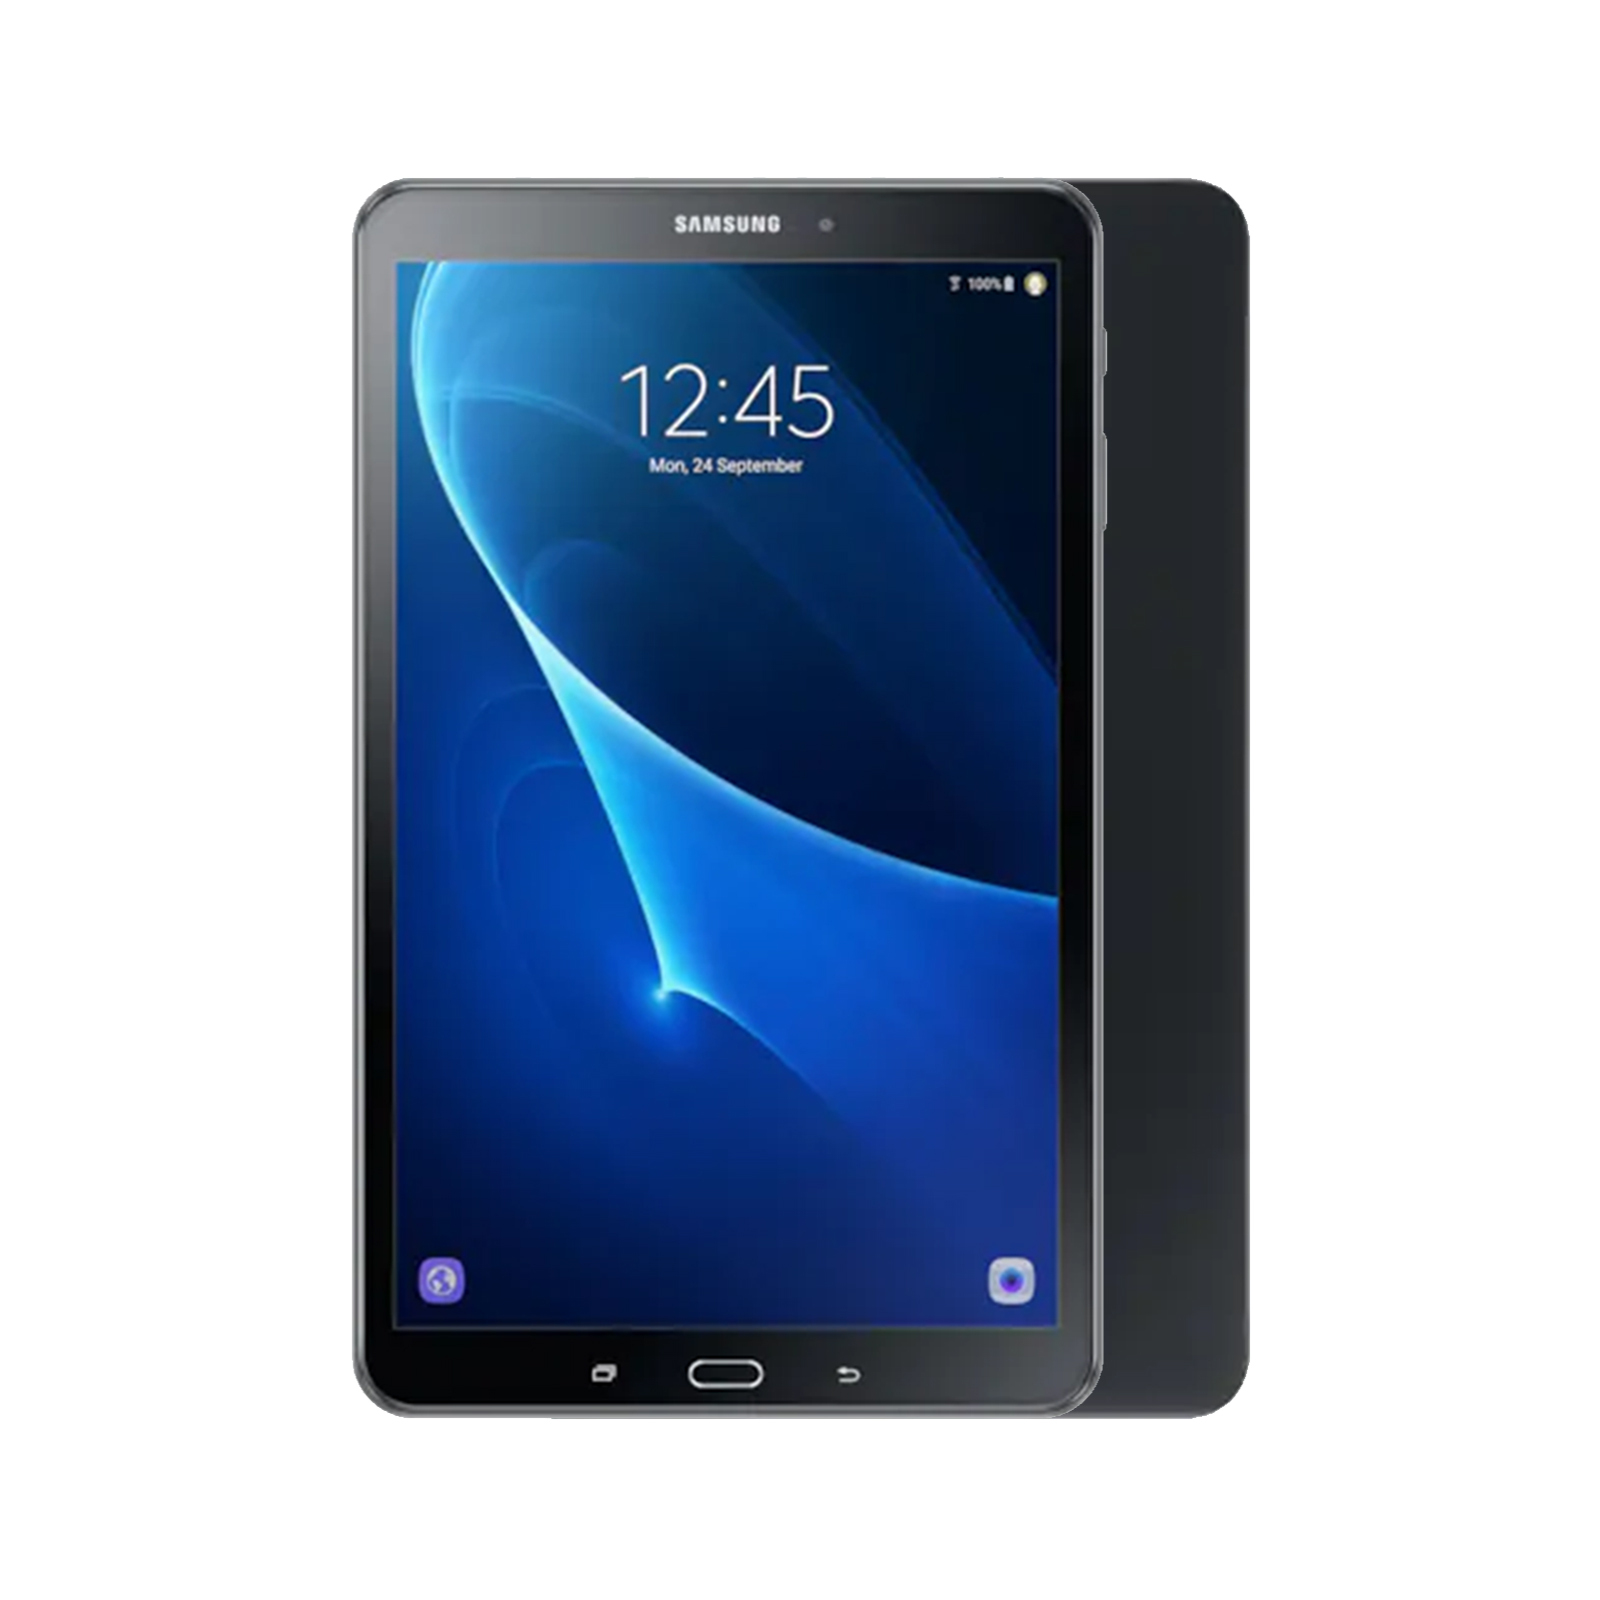 Samsung Galaxy Tab A 10.1 (2019) [WiFi] [16GB] [Black] [Good]